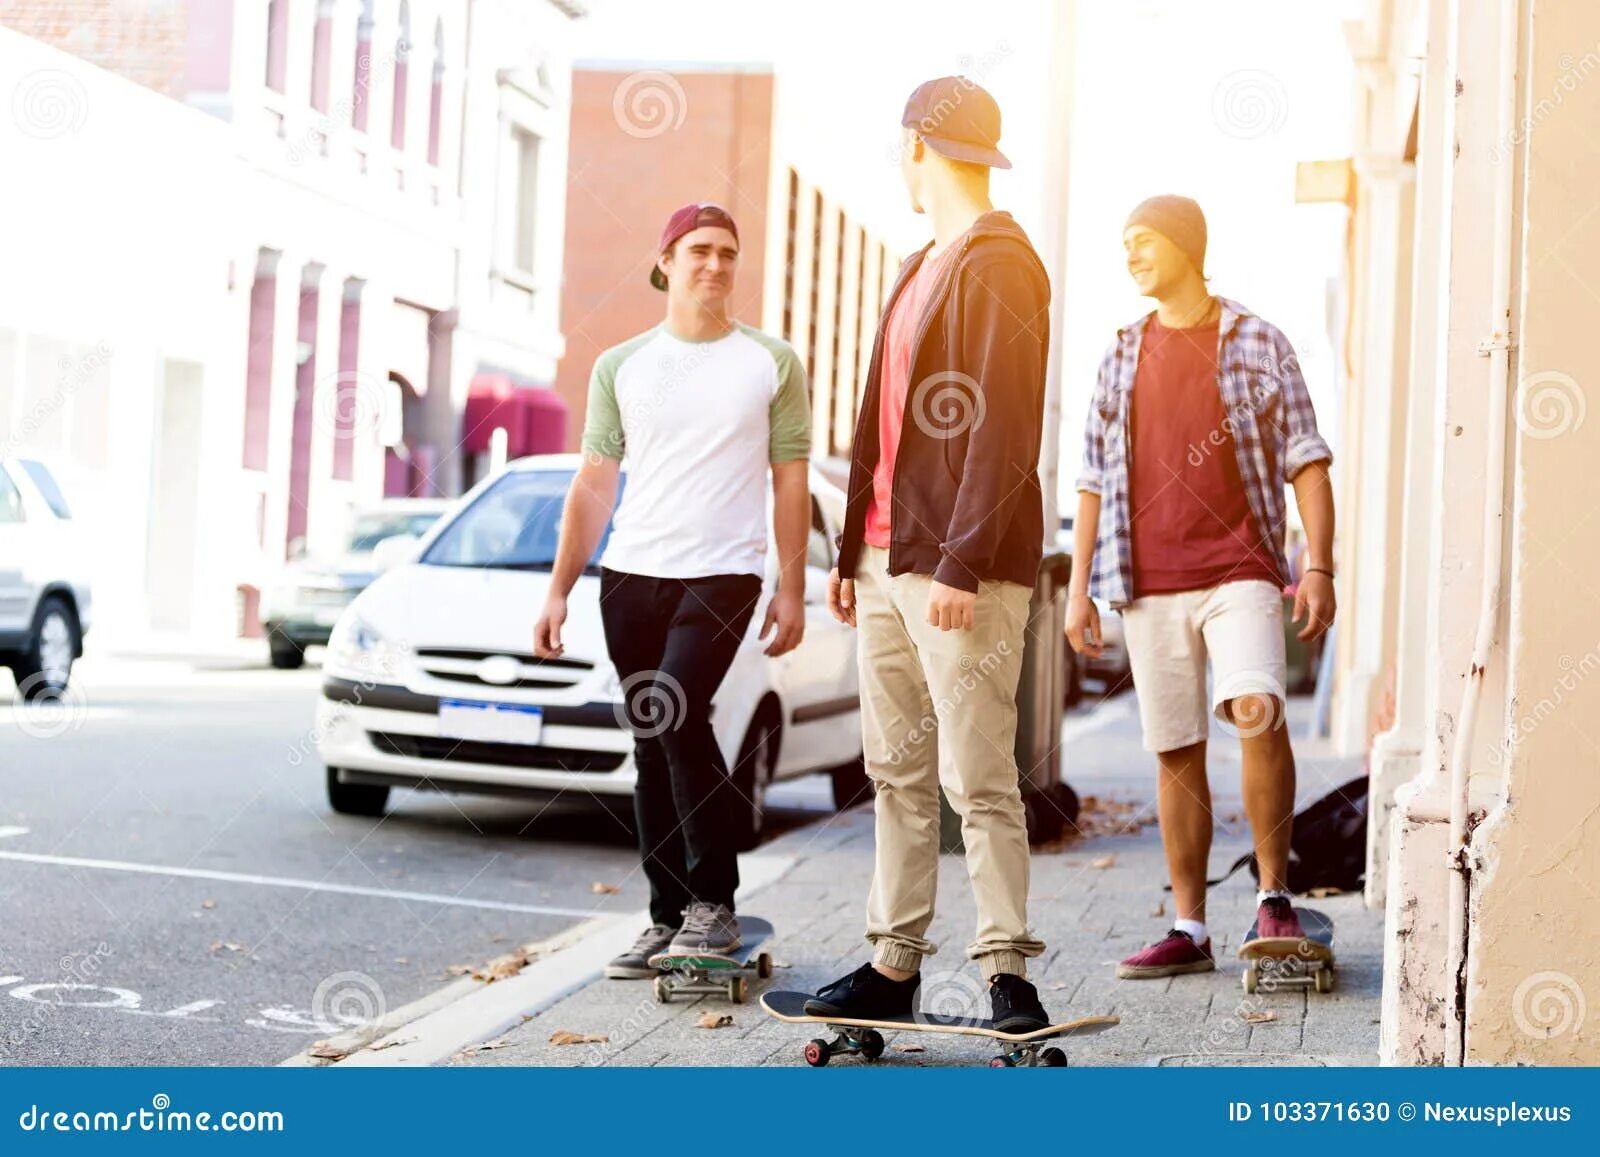 Ниже чем в других местах. Подростки гуляют по улице. Подростки гуляют по городу. Два друга идут по улице. Компания друзей идет по улице.